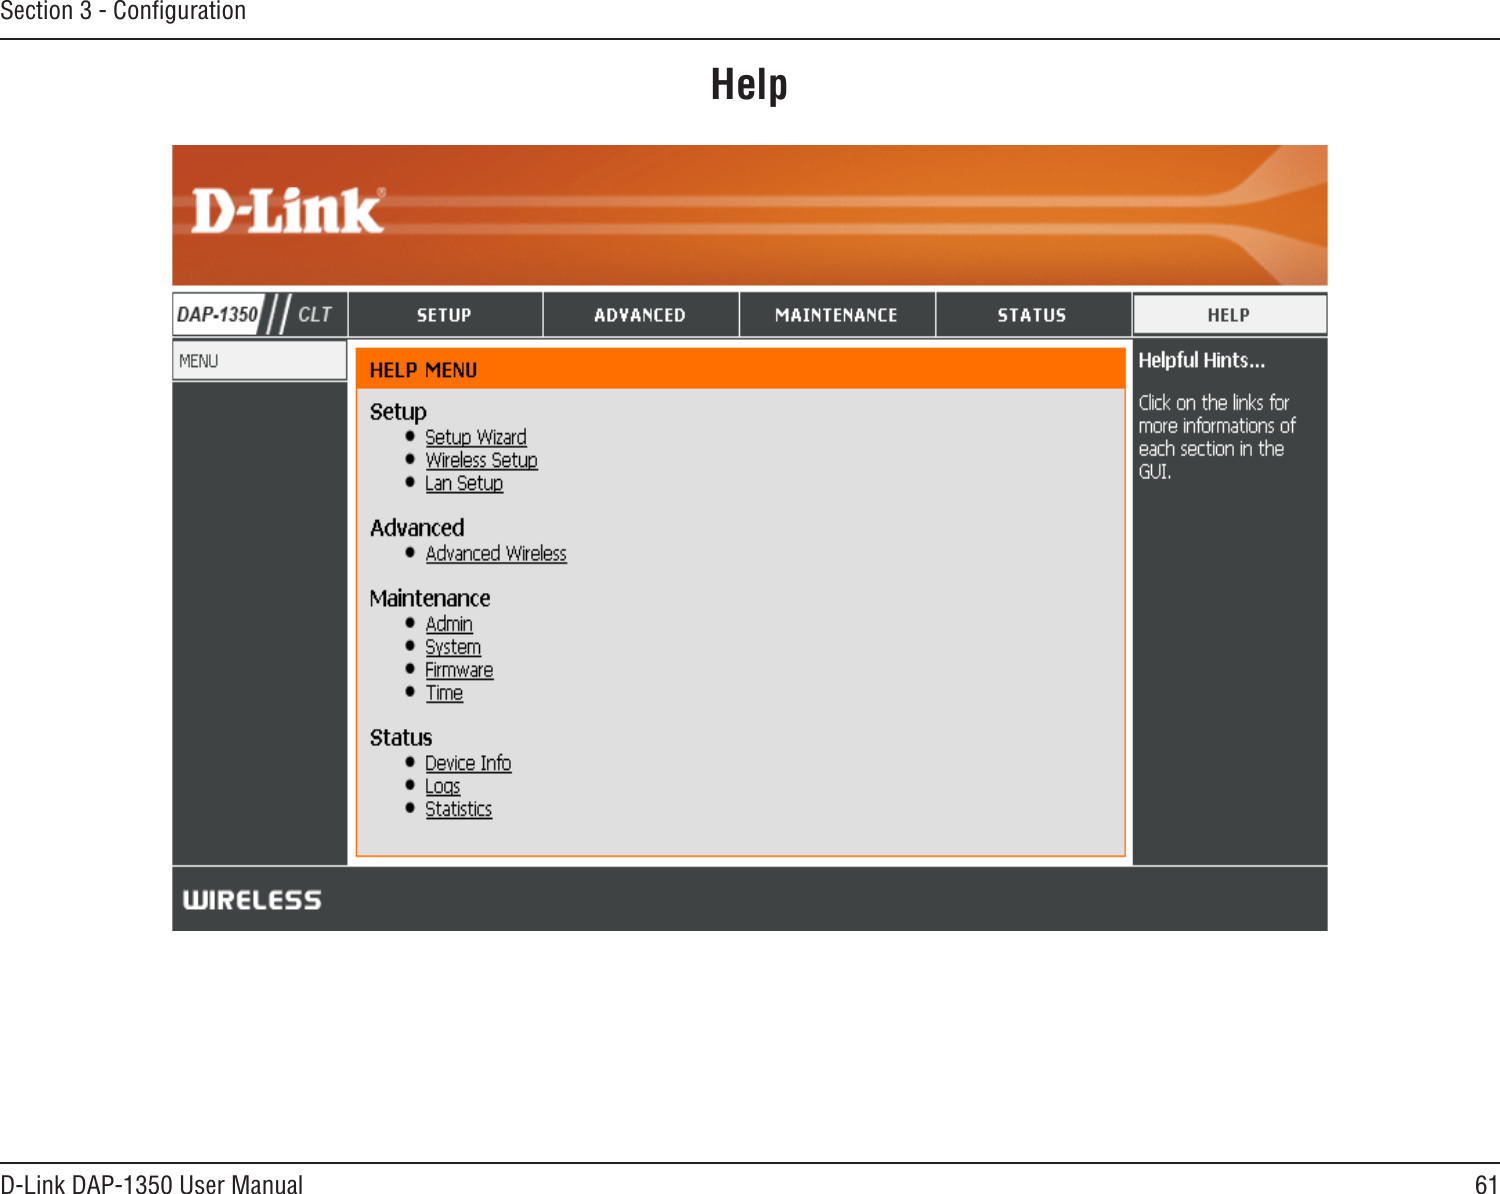 61D-Link DAP-1350 User ManualSection 3 - ConﬁgurationHelp